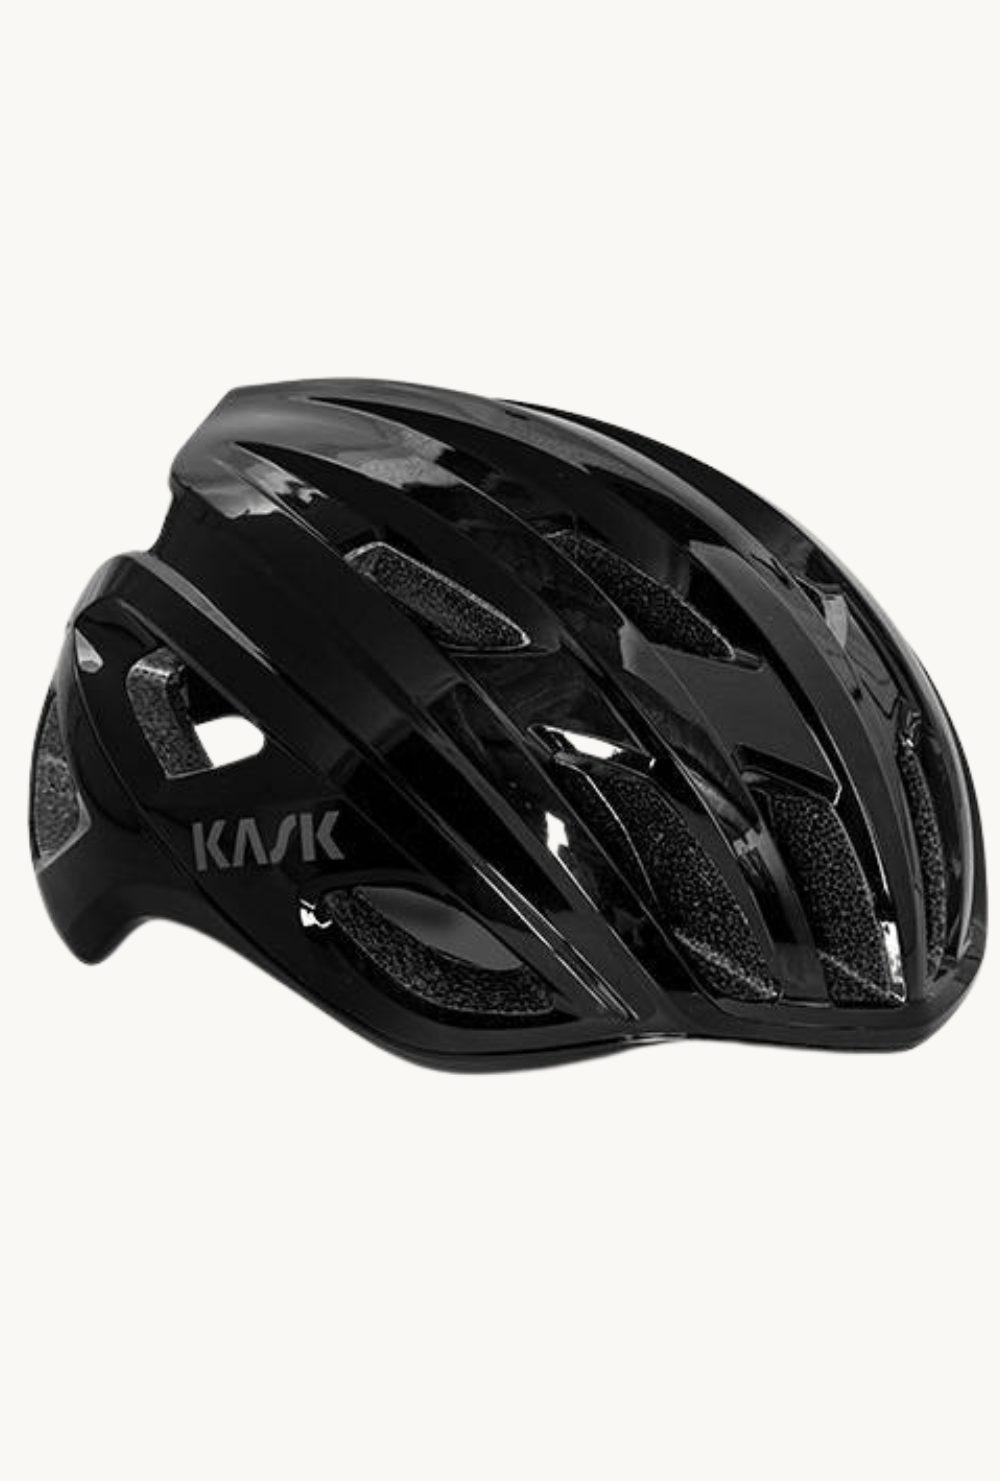 Helmet - Kask Mojito Blacksmall / Black